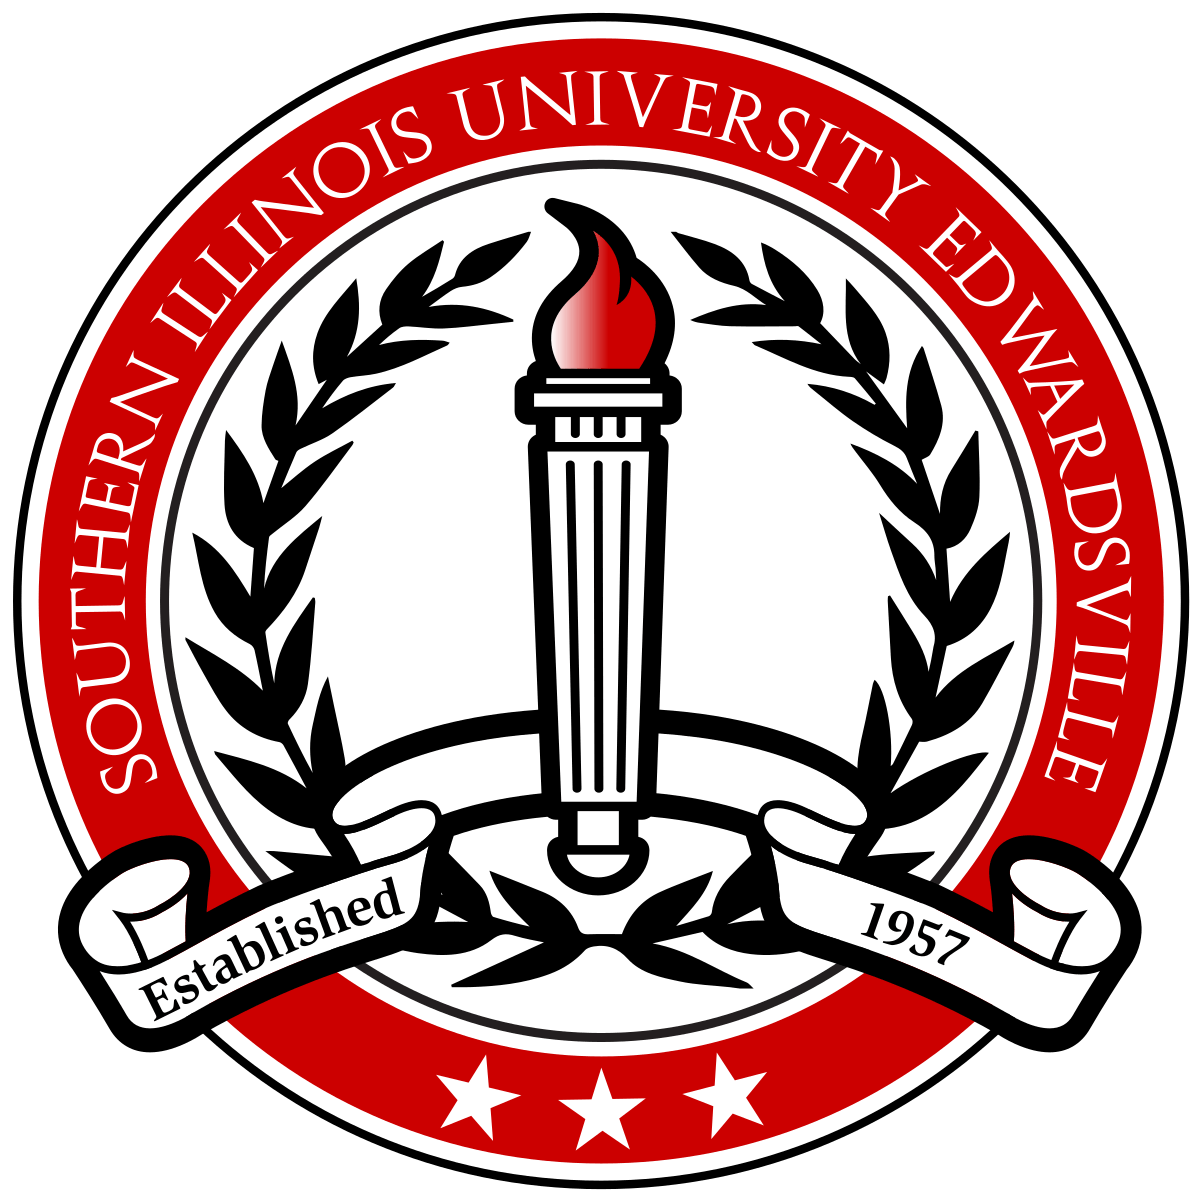 SIUE Logo - Southern Illinois University Edwardsville